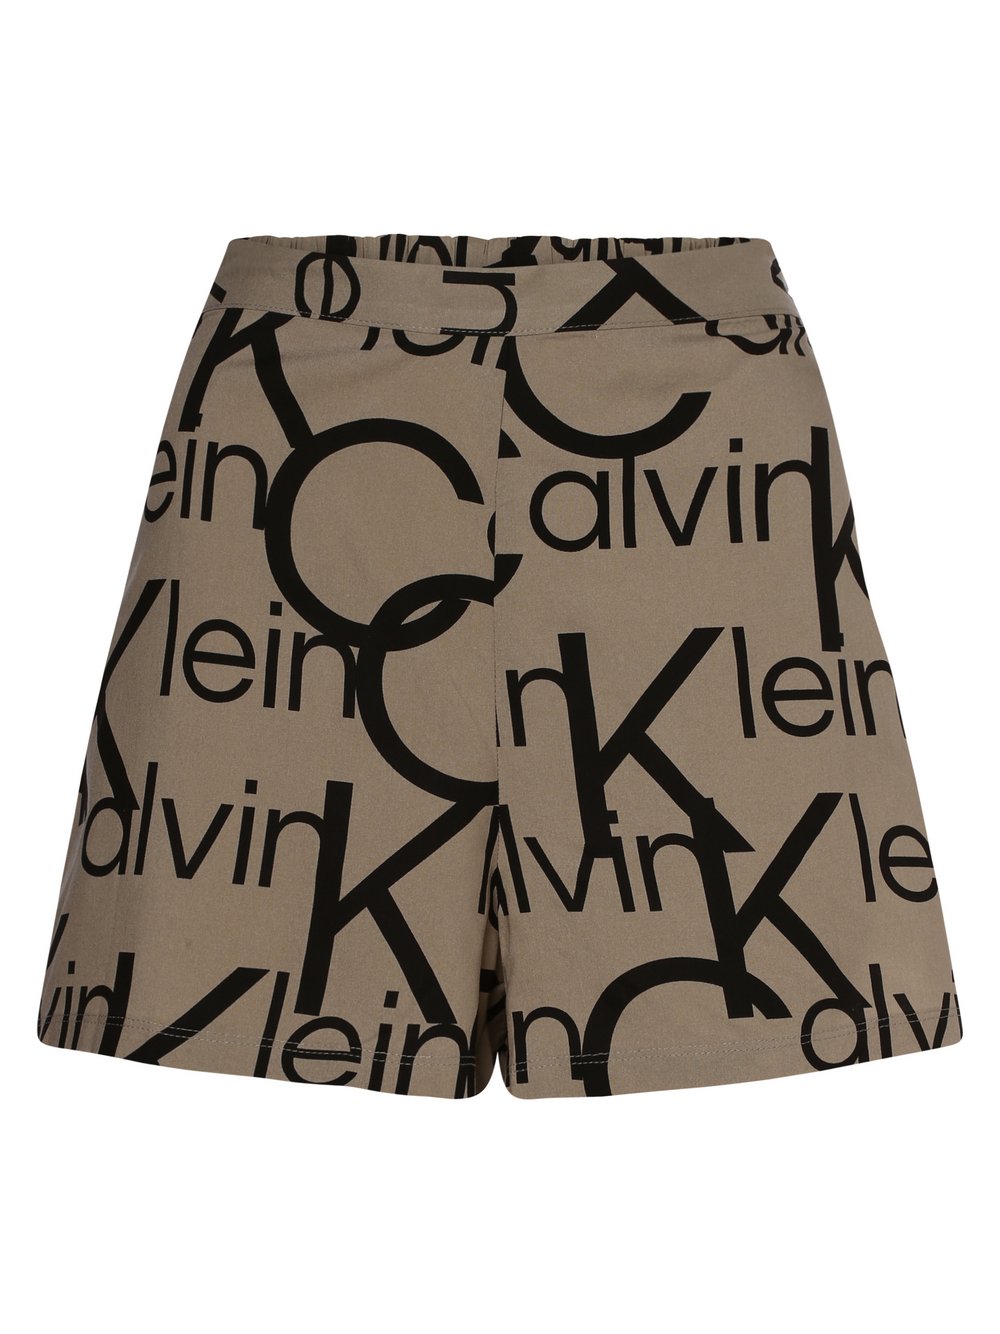 Calvin Klein - Damskie spodenki od piżam, beżowy|szary